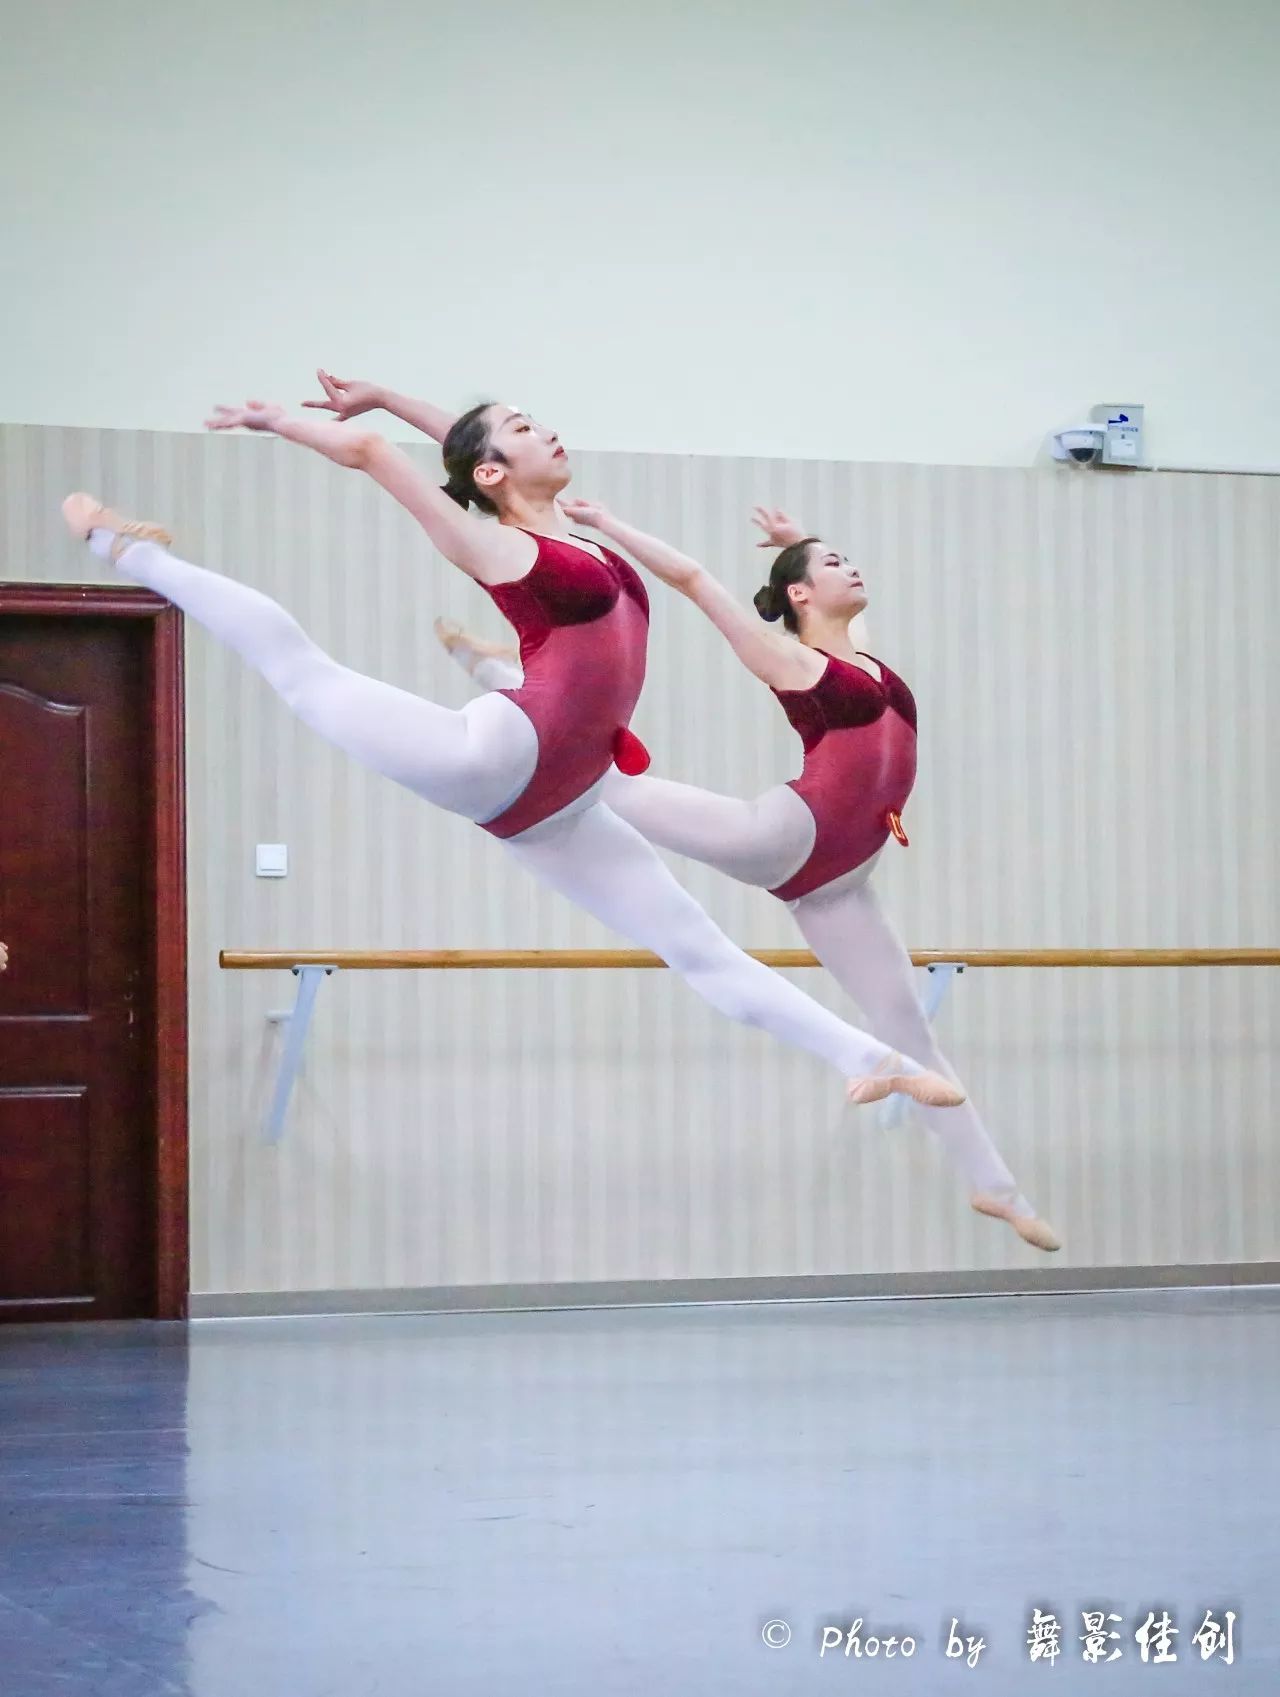 四川师范大学舞蹈学院2015级11班基本功课程(古典舞)考试精彩瞬间